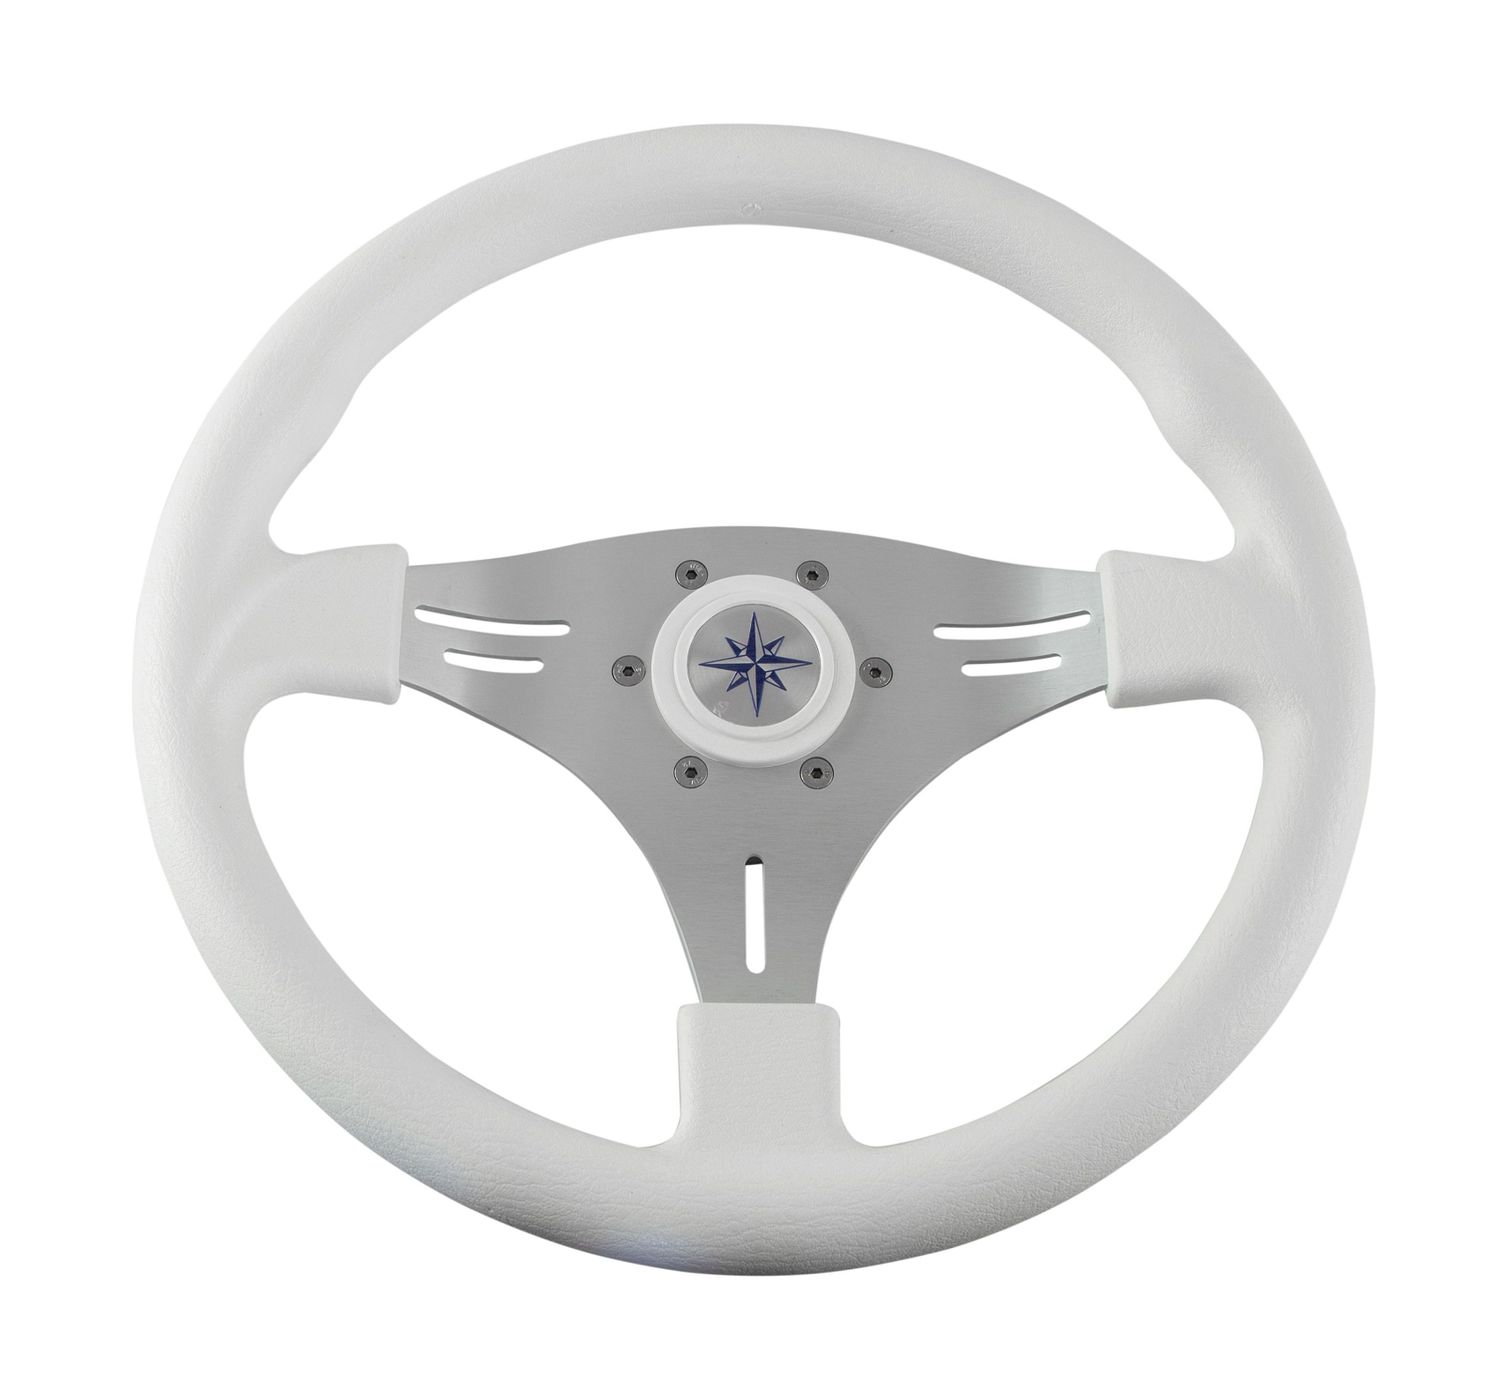 Рулевое колесо MANTA обод белый, спицы серебряные д. 355 мм VN70551-08 рулевое колесо delfino обод белый спицы серебряные д 340 мм vn70401 08